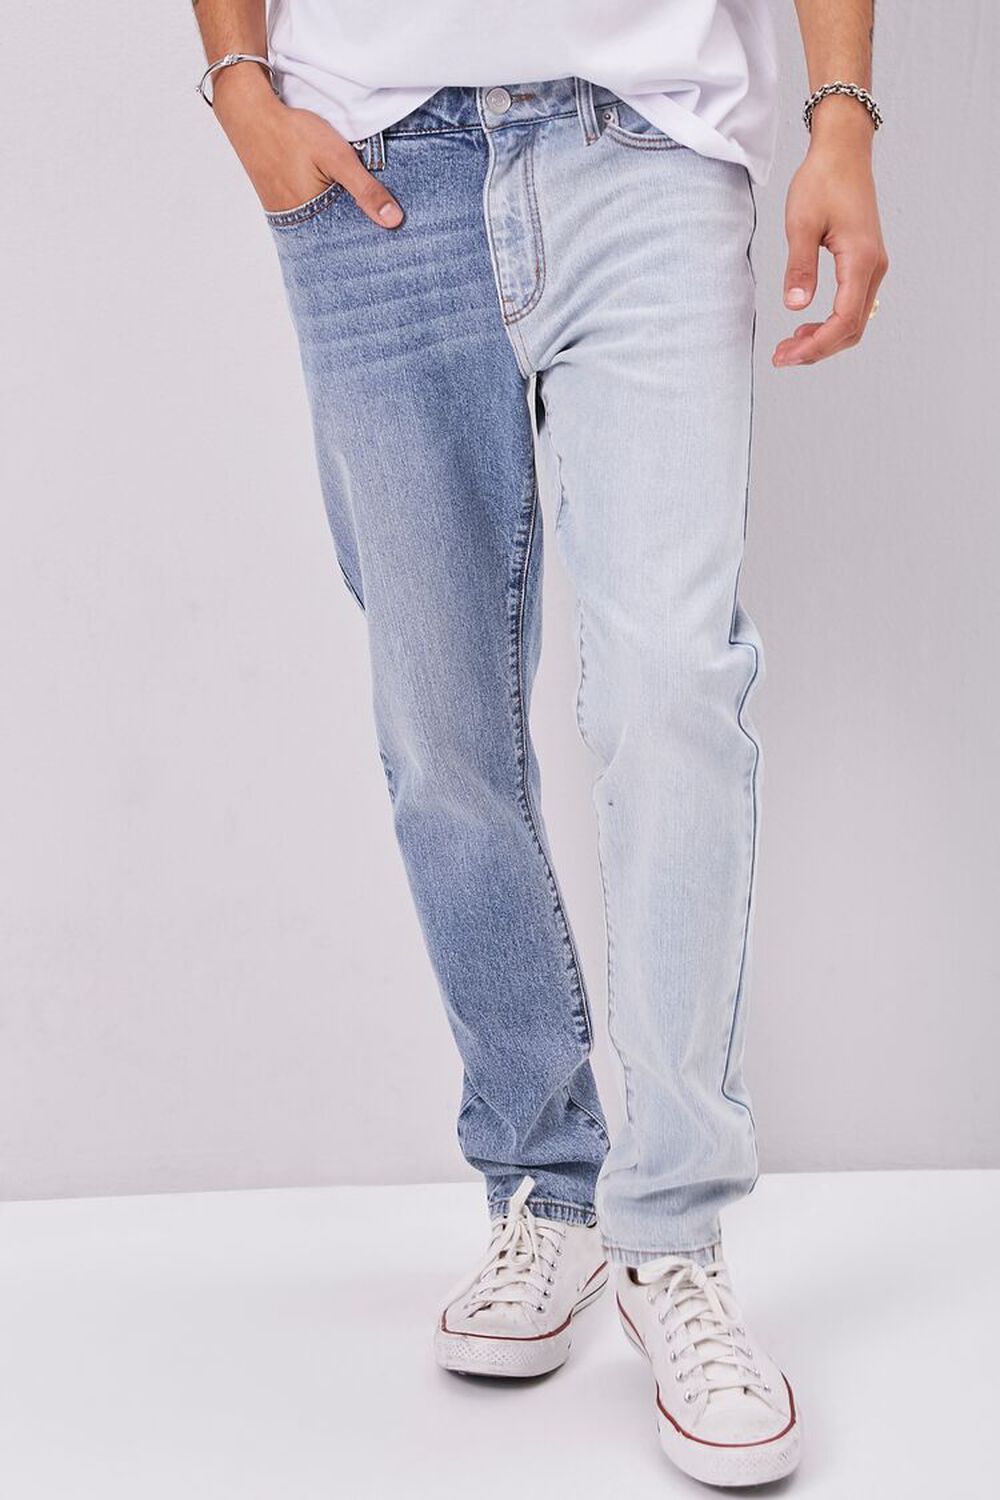 MEDIUM DENIM/DENIM Colorblock Slim-Fit Jeans, image 2